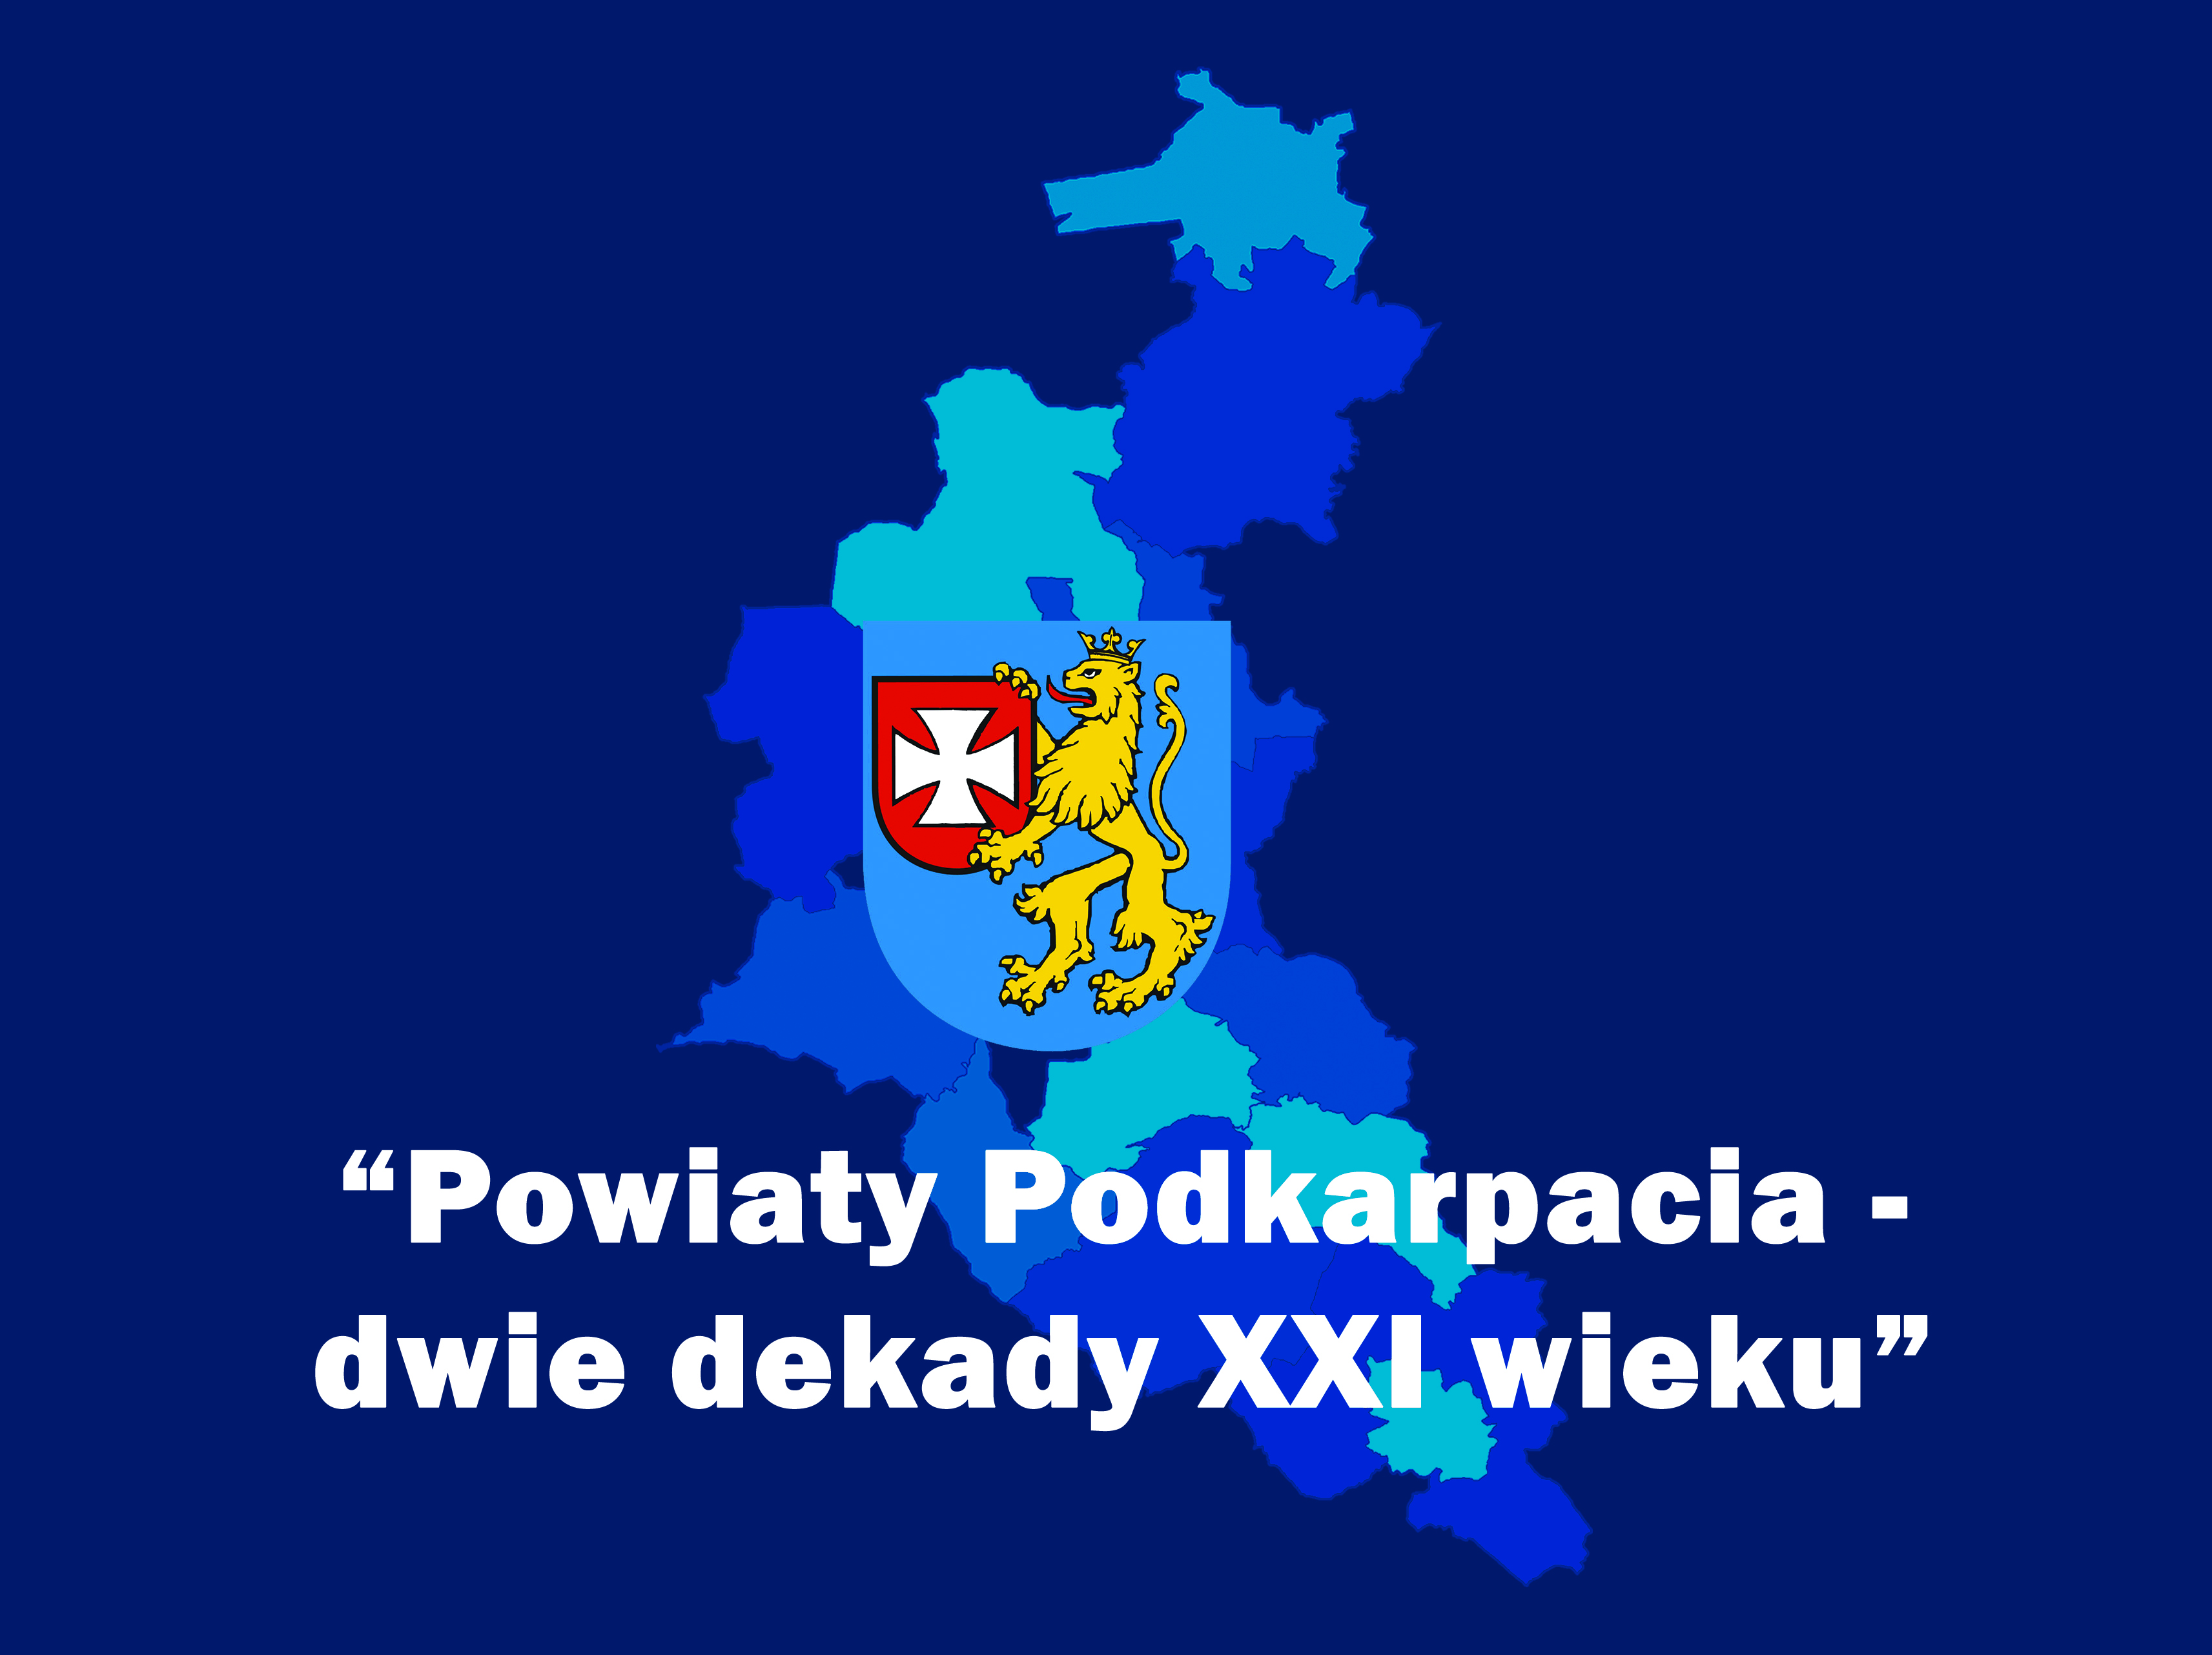 Powiat Rzeszowski zwycięzcą w rankingu "Powiaty Podkarpacia - dwie dekady rozwoju XXI wieku"